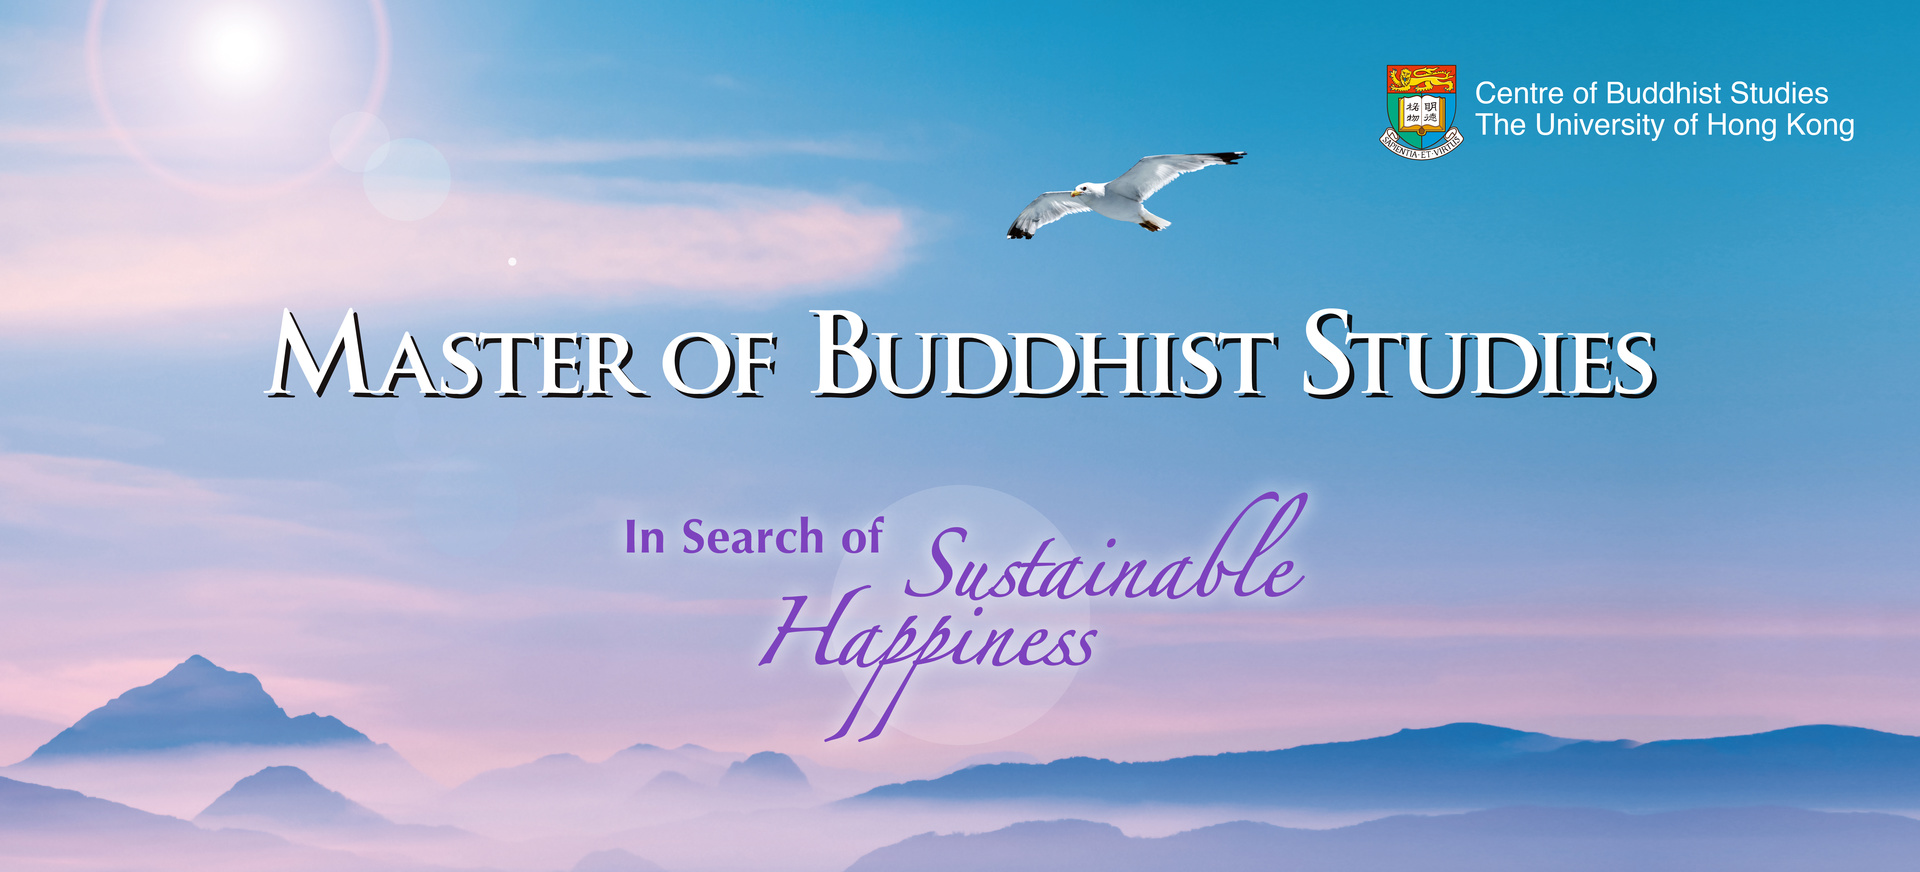 Master of Buddhist Studies 2018-19